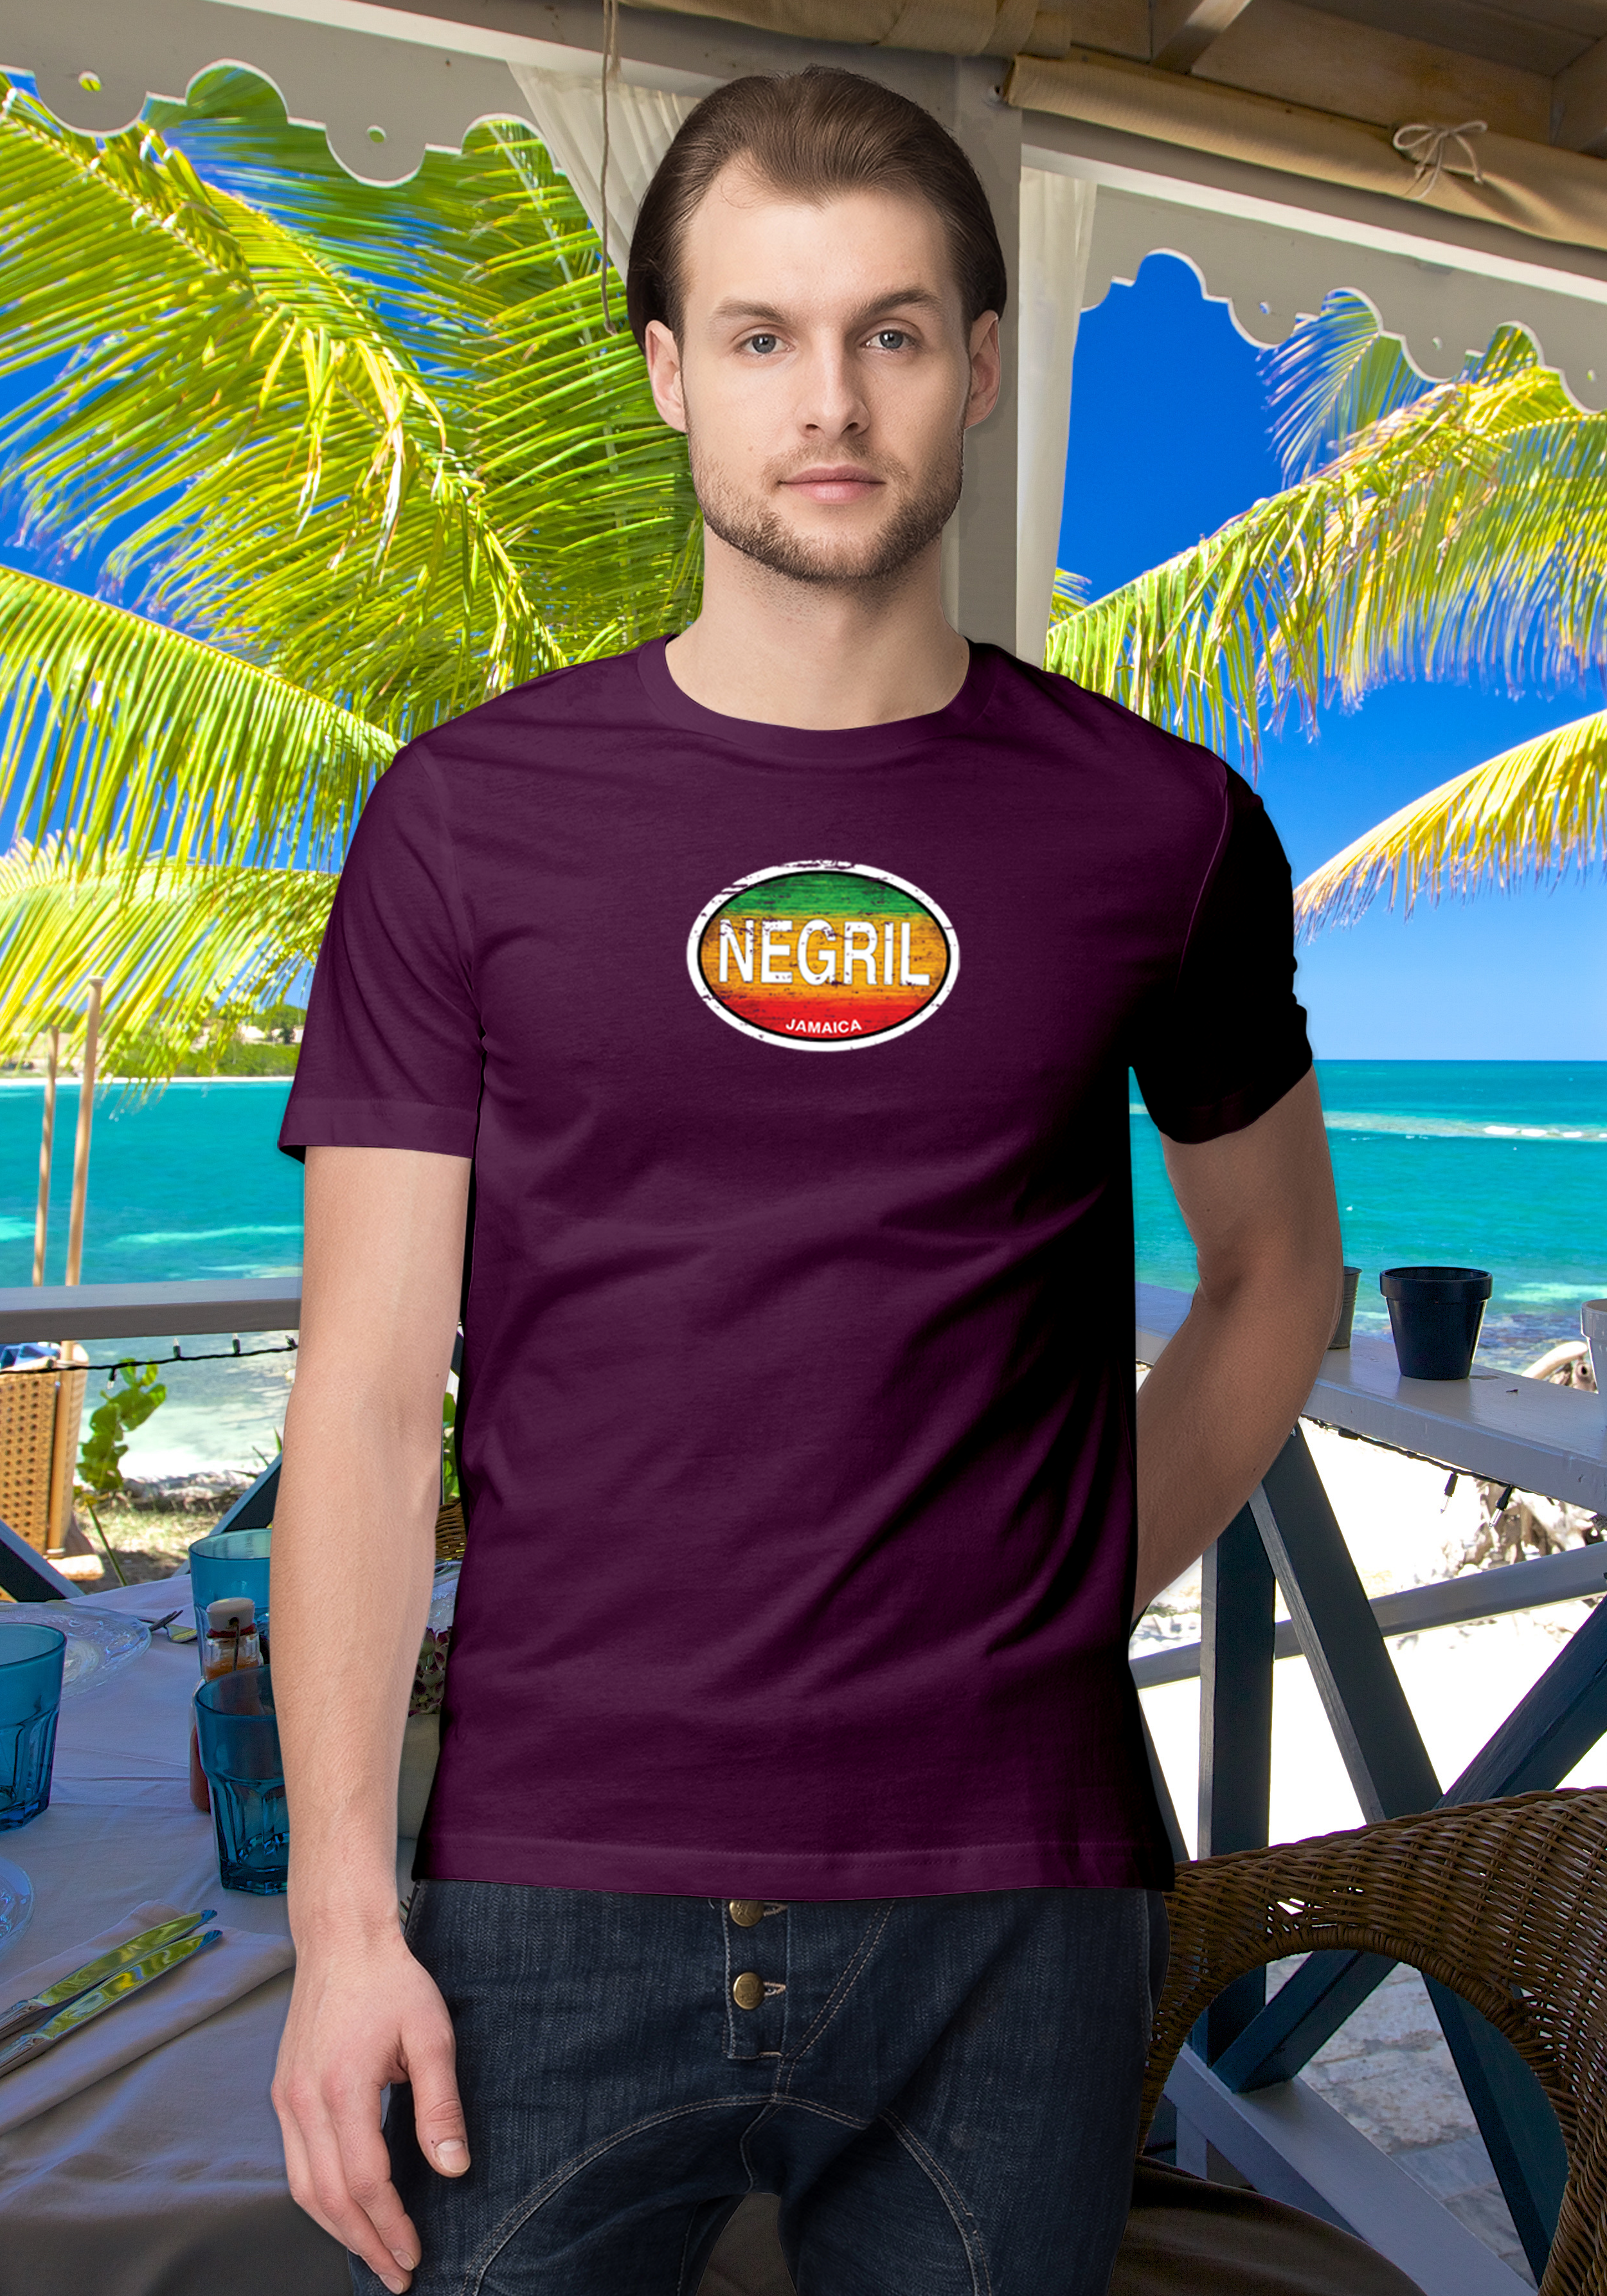 Negril Men's Rasta T-Shirt Souvenirs - My Destination Location